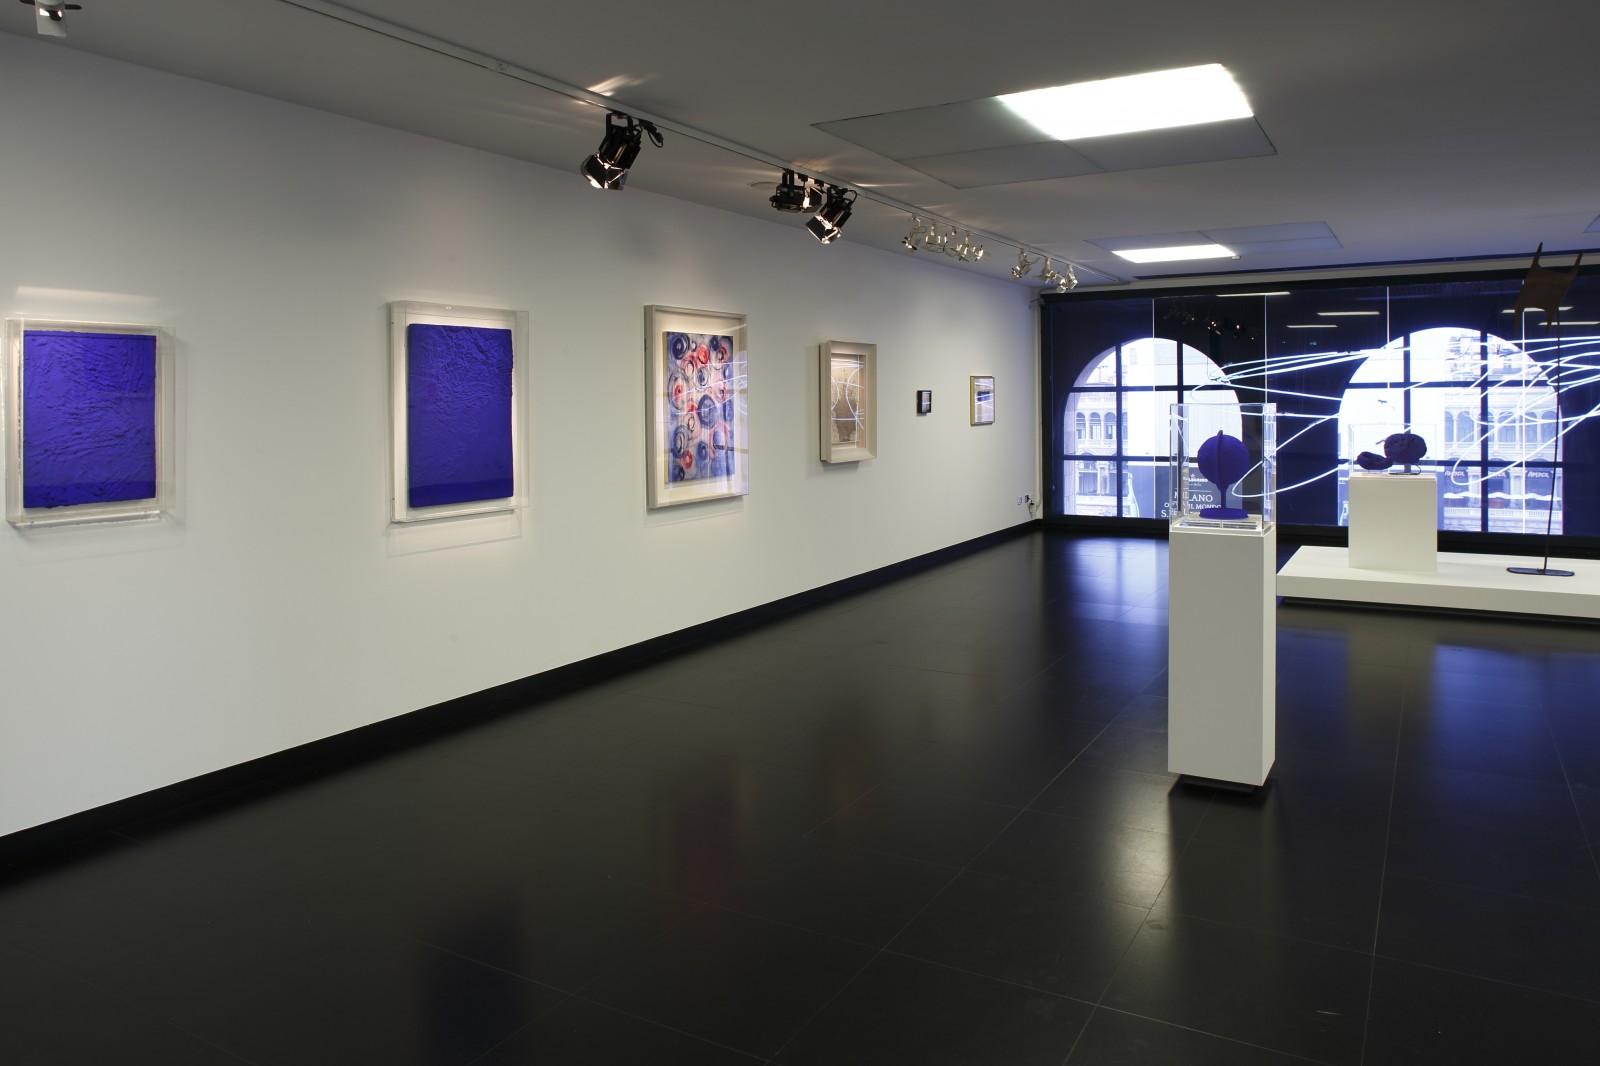 View of the exhibition "Yves Klein Lucio Fontana Milano Parigi 1957-1962", Museo del Novecento, 2014